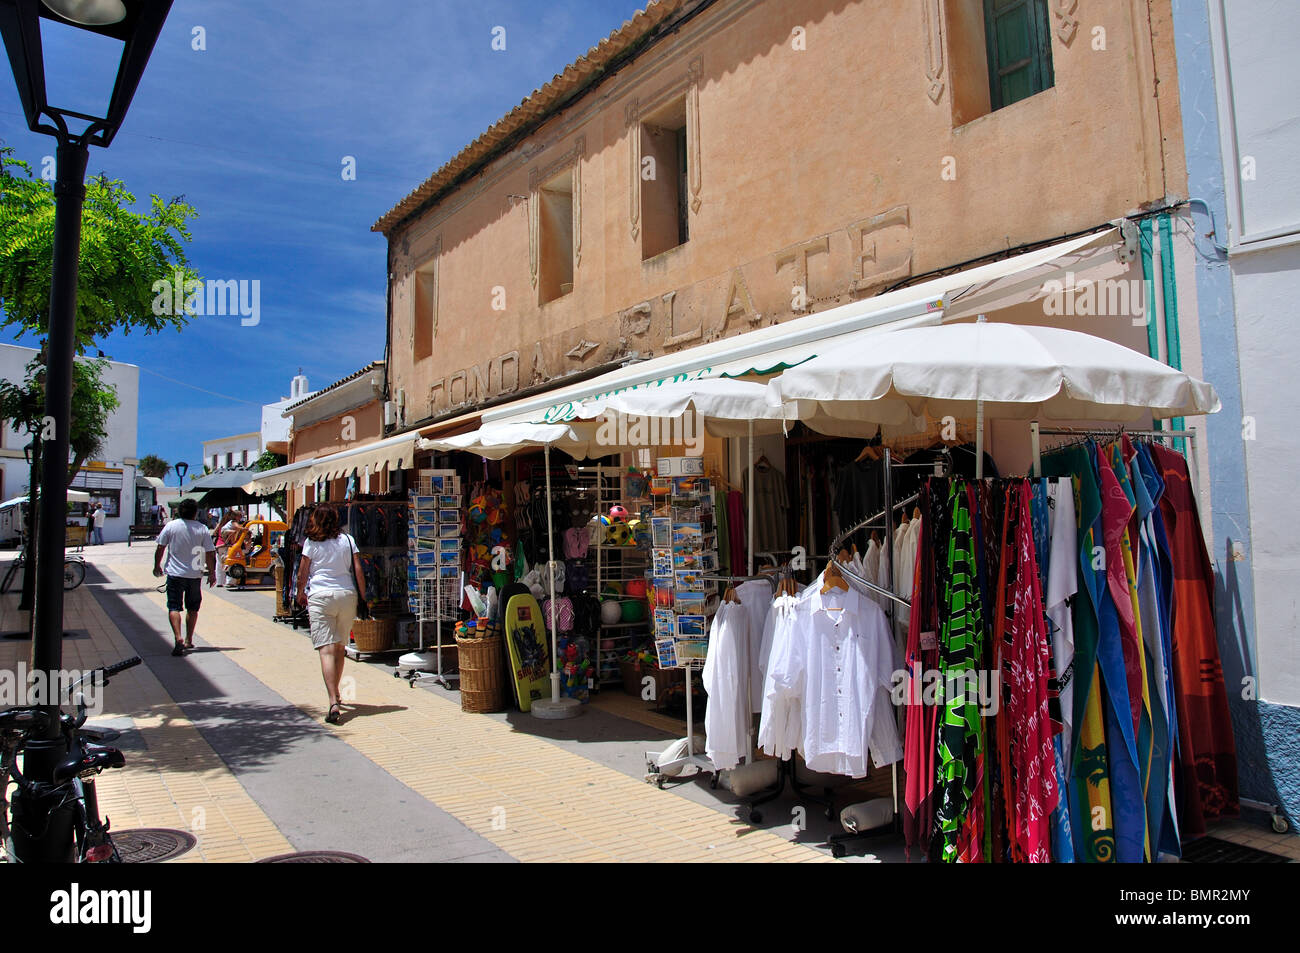 La rue commerçante piétonne, Sant Francesc Xavier, Majorque, Îles Baléares, Espagne Banque D'Images